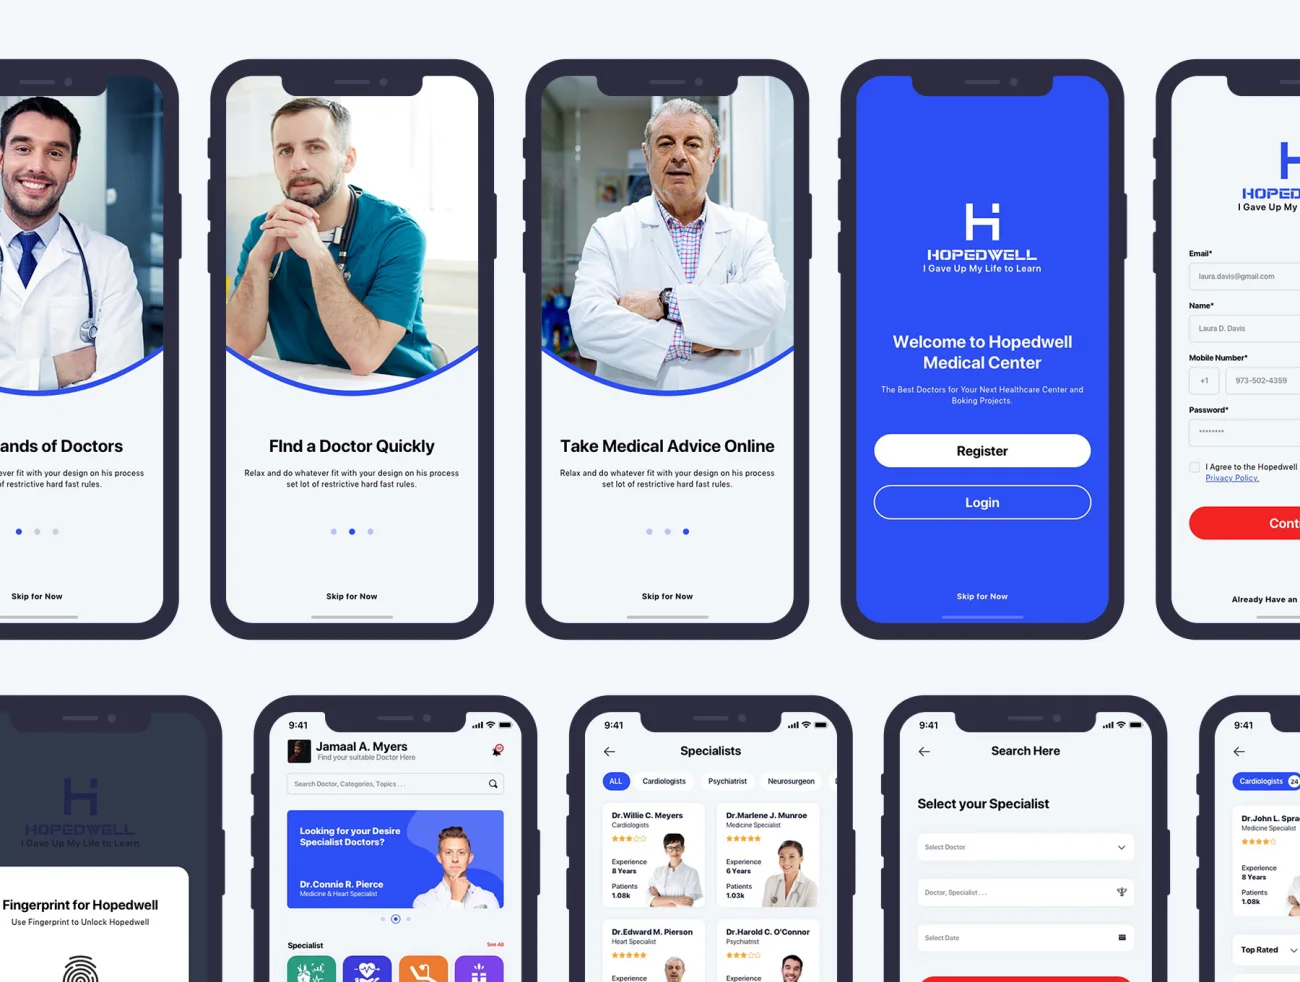 Hospital _ HealthCare Mobile App UI 33屏医院与医疗保健移动应用程序用户界面-UI/UX、ui套件、列表、卡片式、图表、地图、应用、日历、注册、网购、聊天、表单、详情、预订-到位啦UI